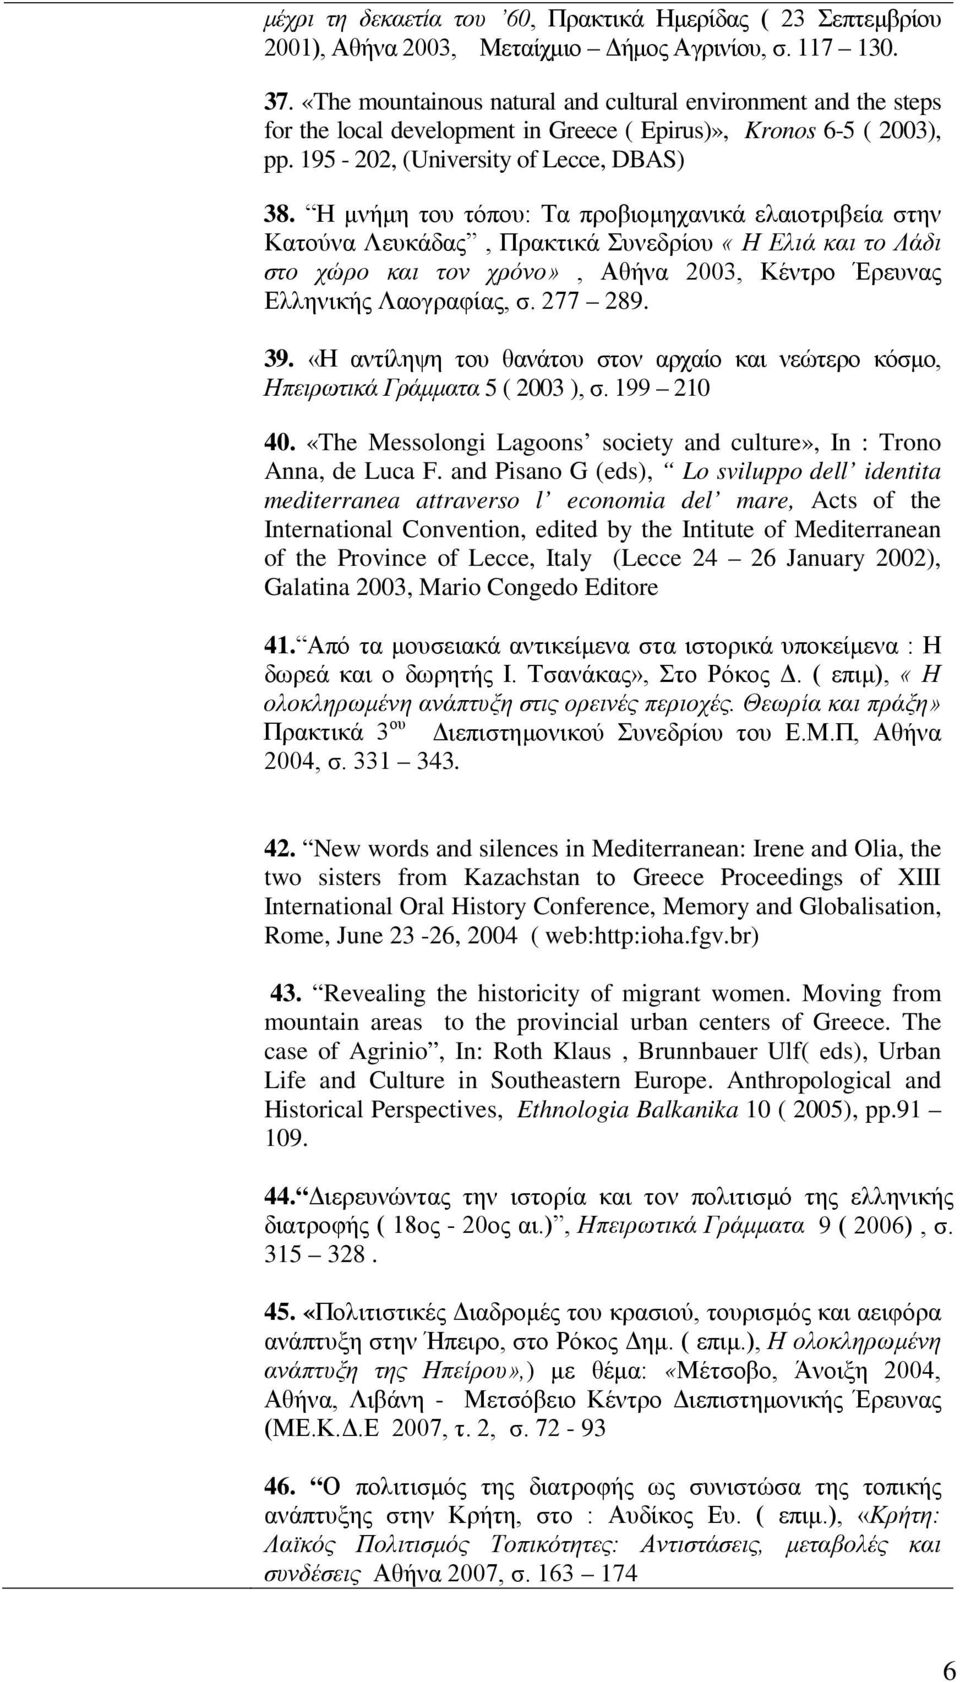 Η μνήμη του τόπου: Τα προβιομηχανικά ελαιοτριβεία στην Κατούνα Λευκάδας, Πρακτικά Συνεδρίου «Η Ελιά και το Λάδι στο χώρο και τον χρόνο», Αθήνα 2003, Κέντρο Έρευνας Ελληνικής Λαογραφίας, σ. 277 289.